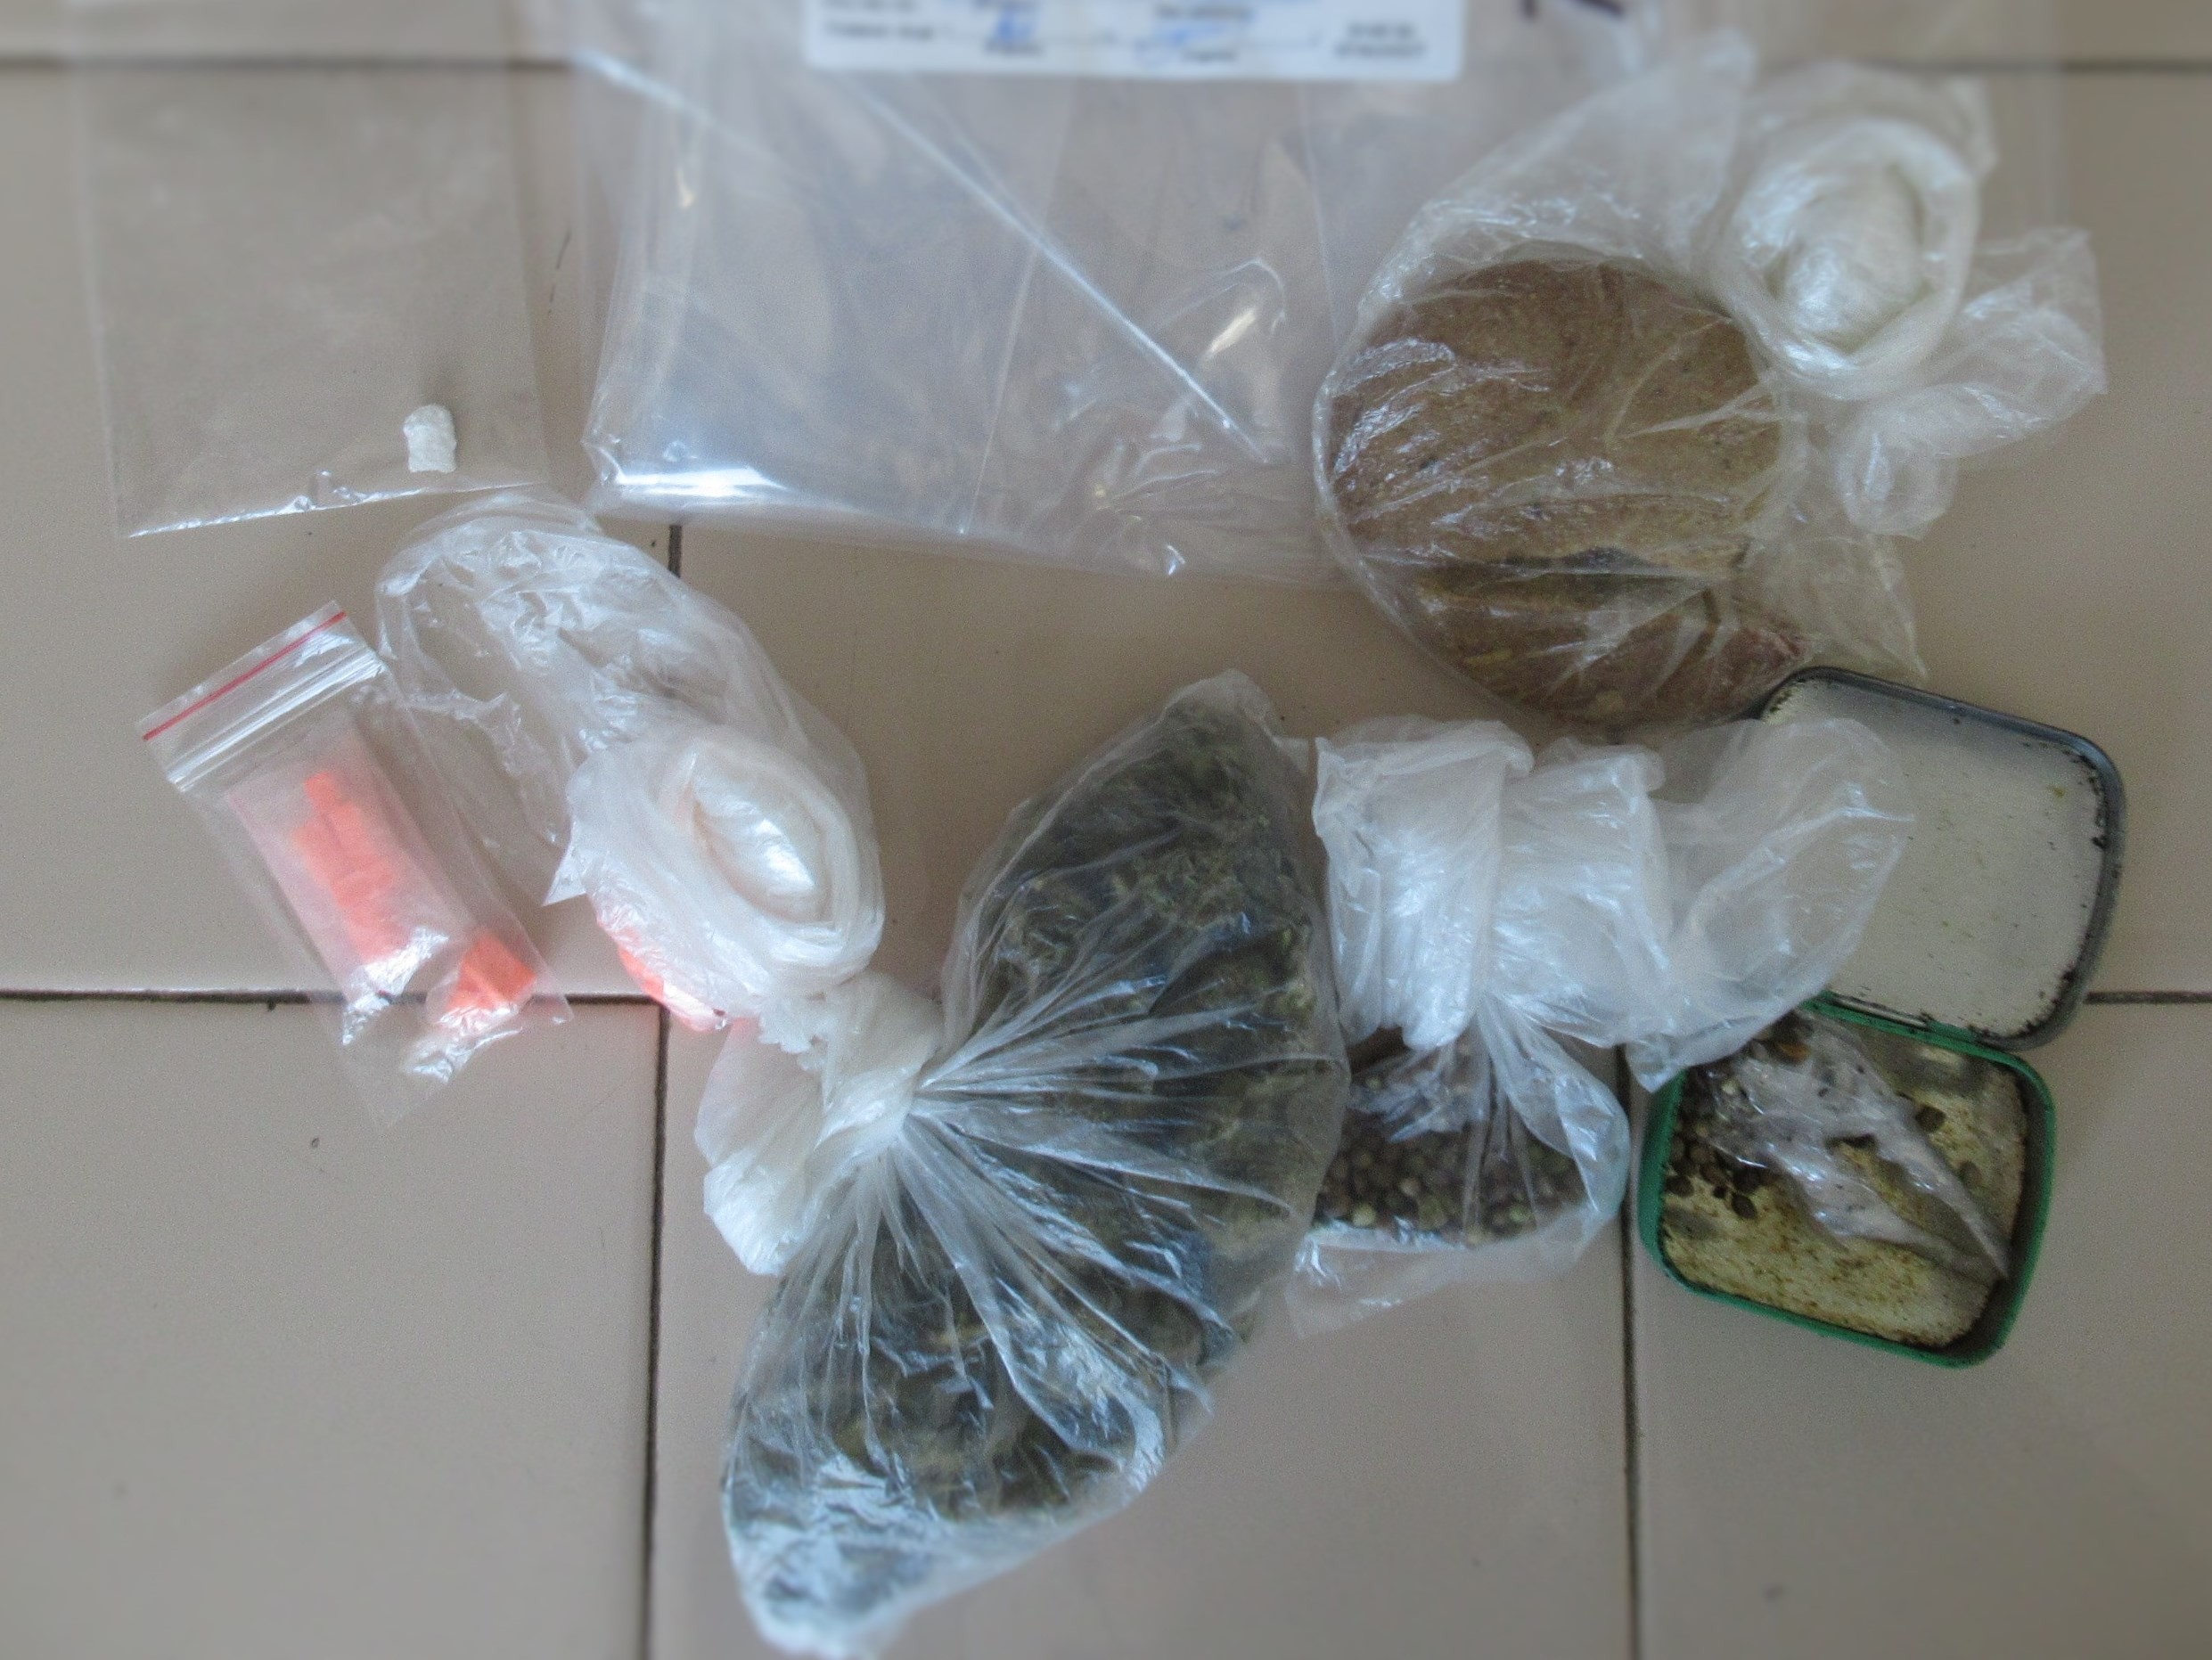 Широк спектър дрога, пособия за разфасоване и пакетиране са открити и иззети при поредната успешна спецакция